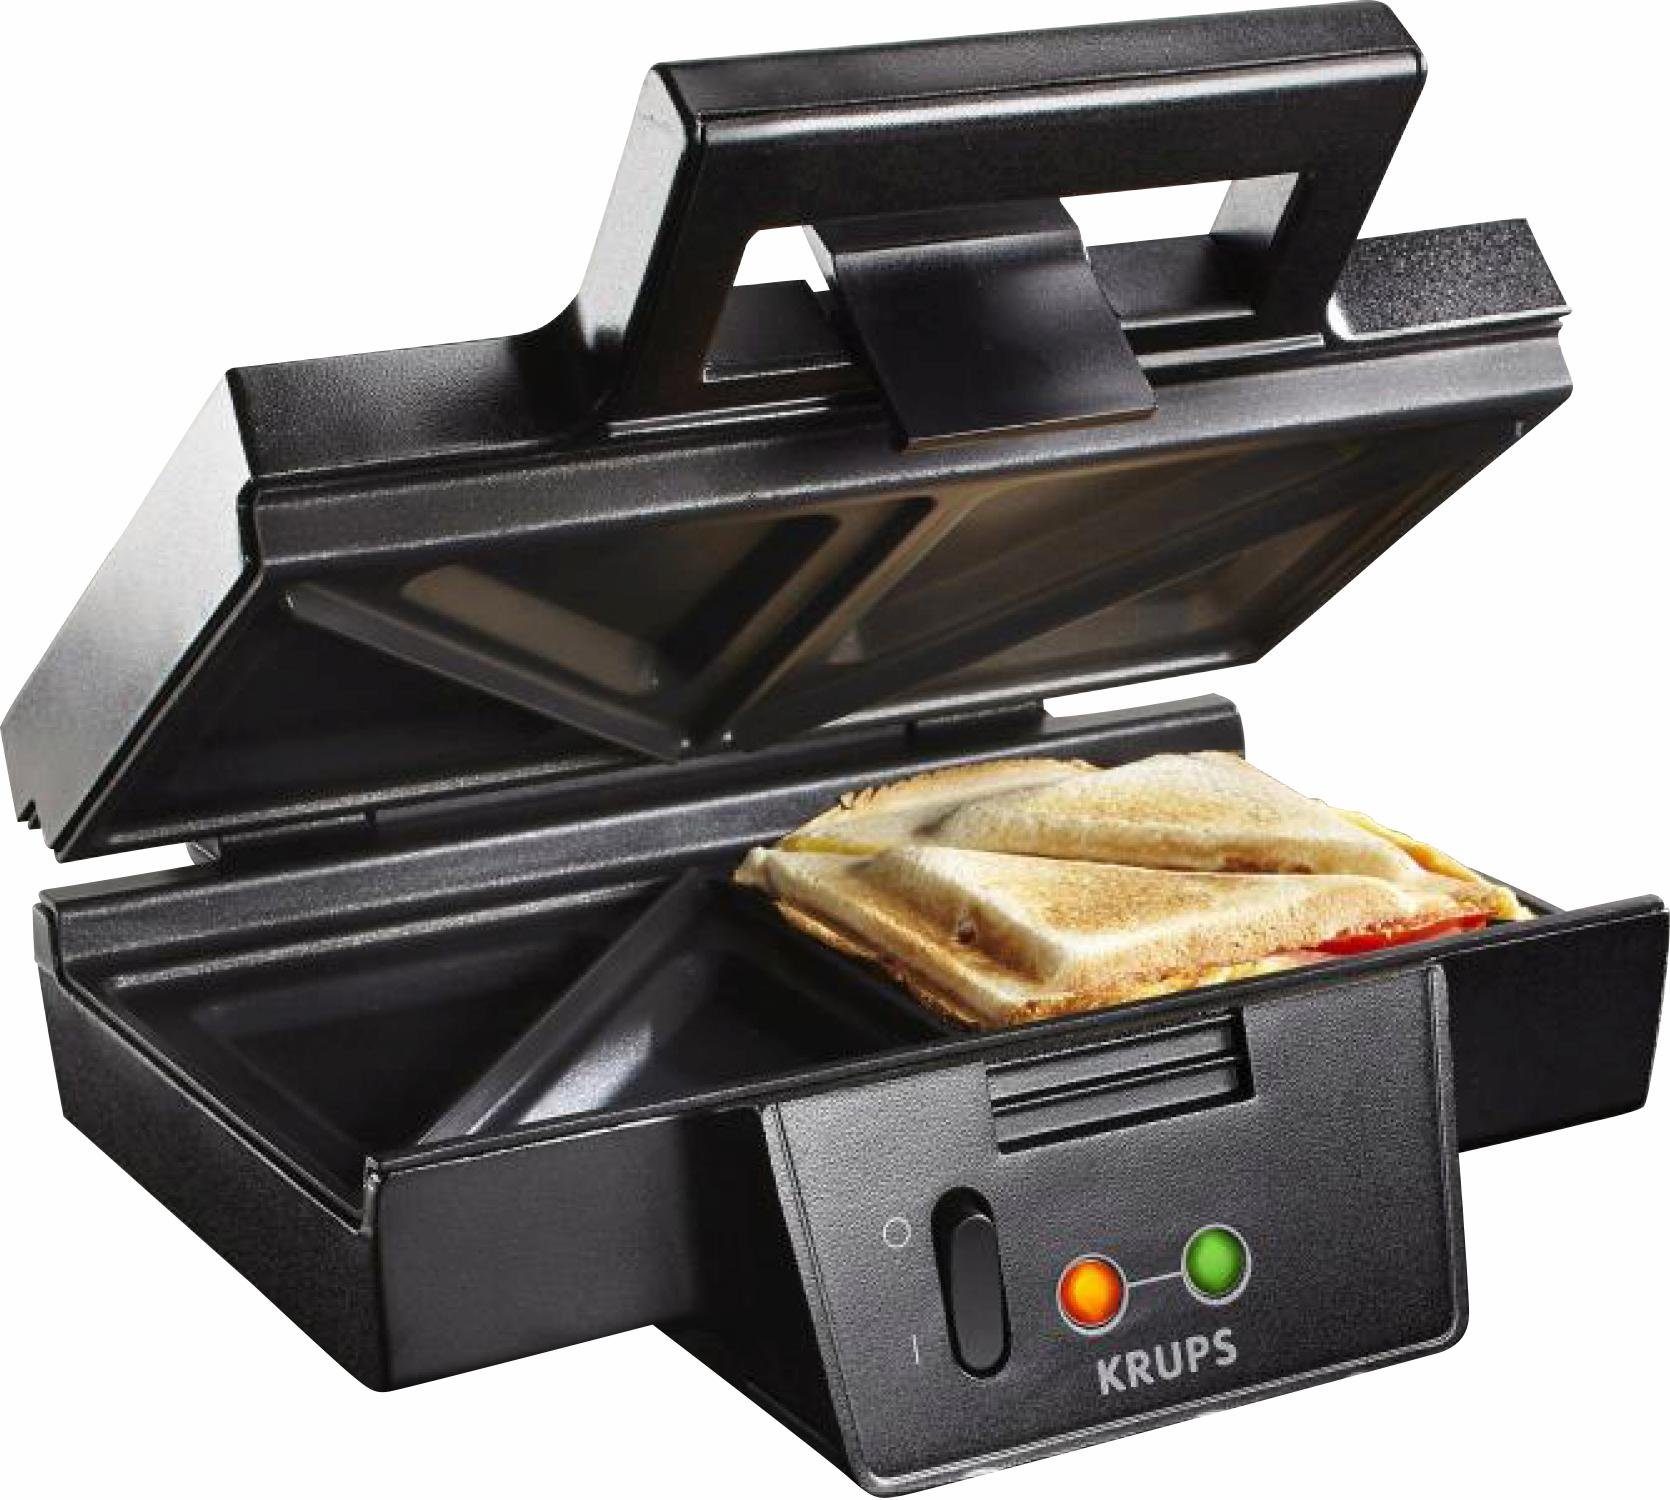 Krups Sandwichmaker FDK451, 850 W, antihaftbeschichtete Platten, Aufheiz-  und Temperaturkontrollleuchte, Wärmeisolierter Griff und Anti- Rutschfüße  sorgen für eine sichere Handhabung